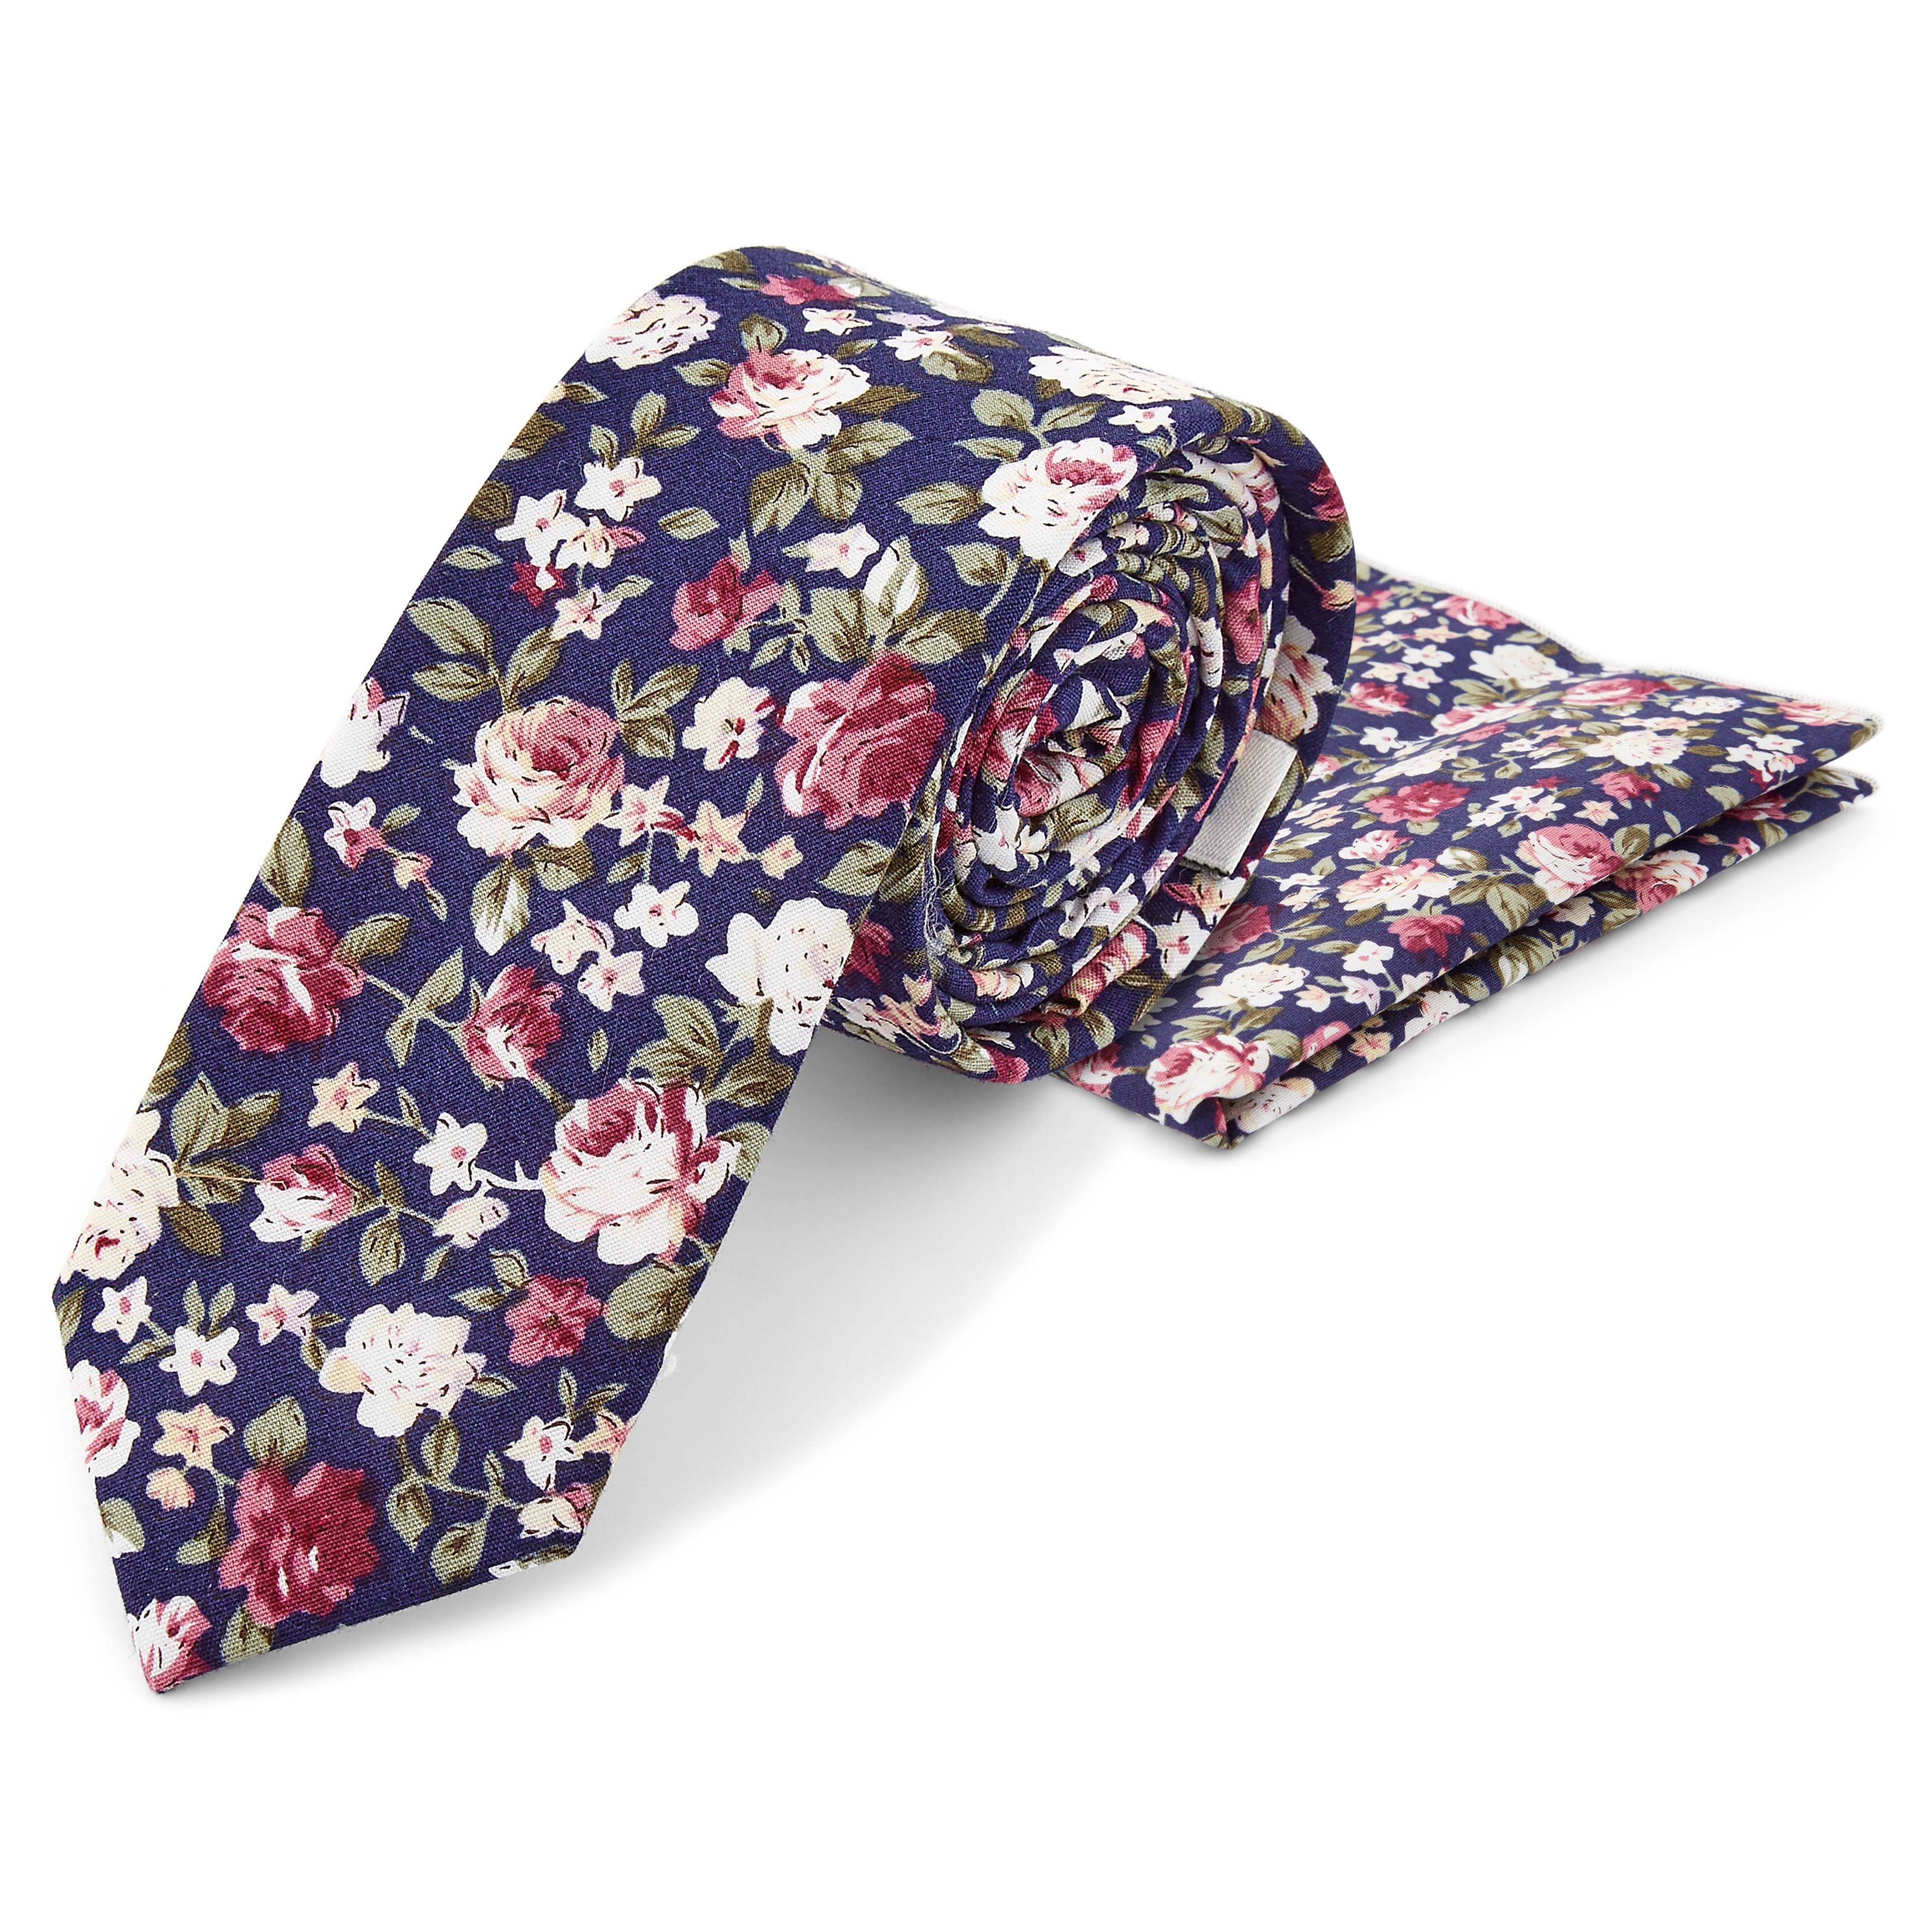 Set met katoenen stropdas en pochet met blauwe, roze en groene bloemenprint